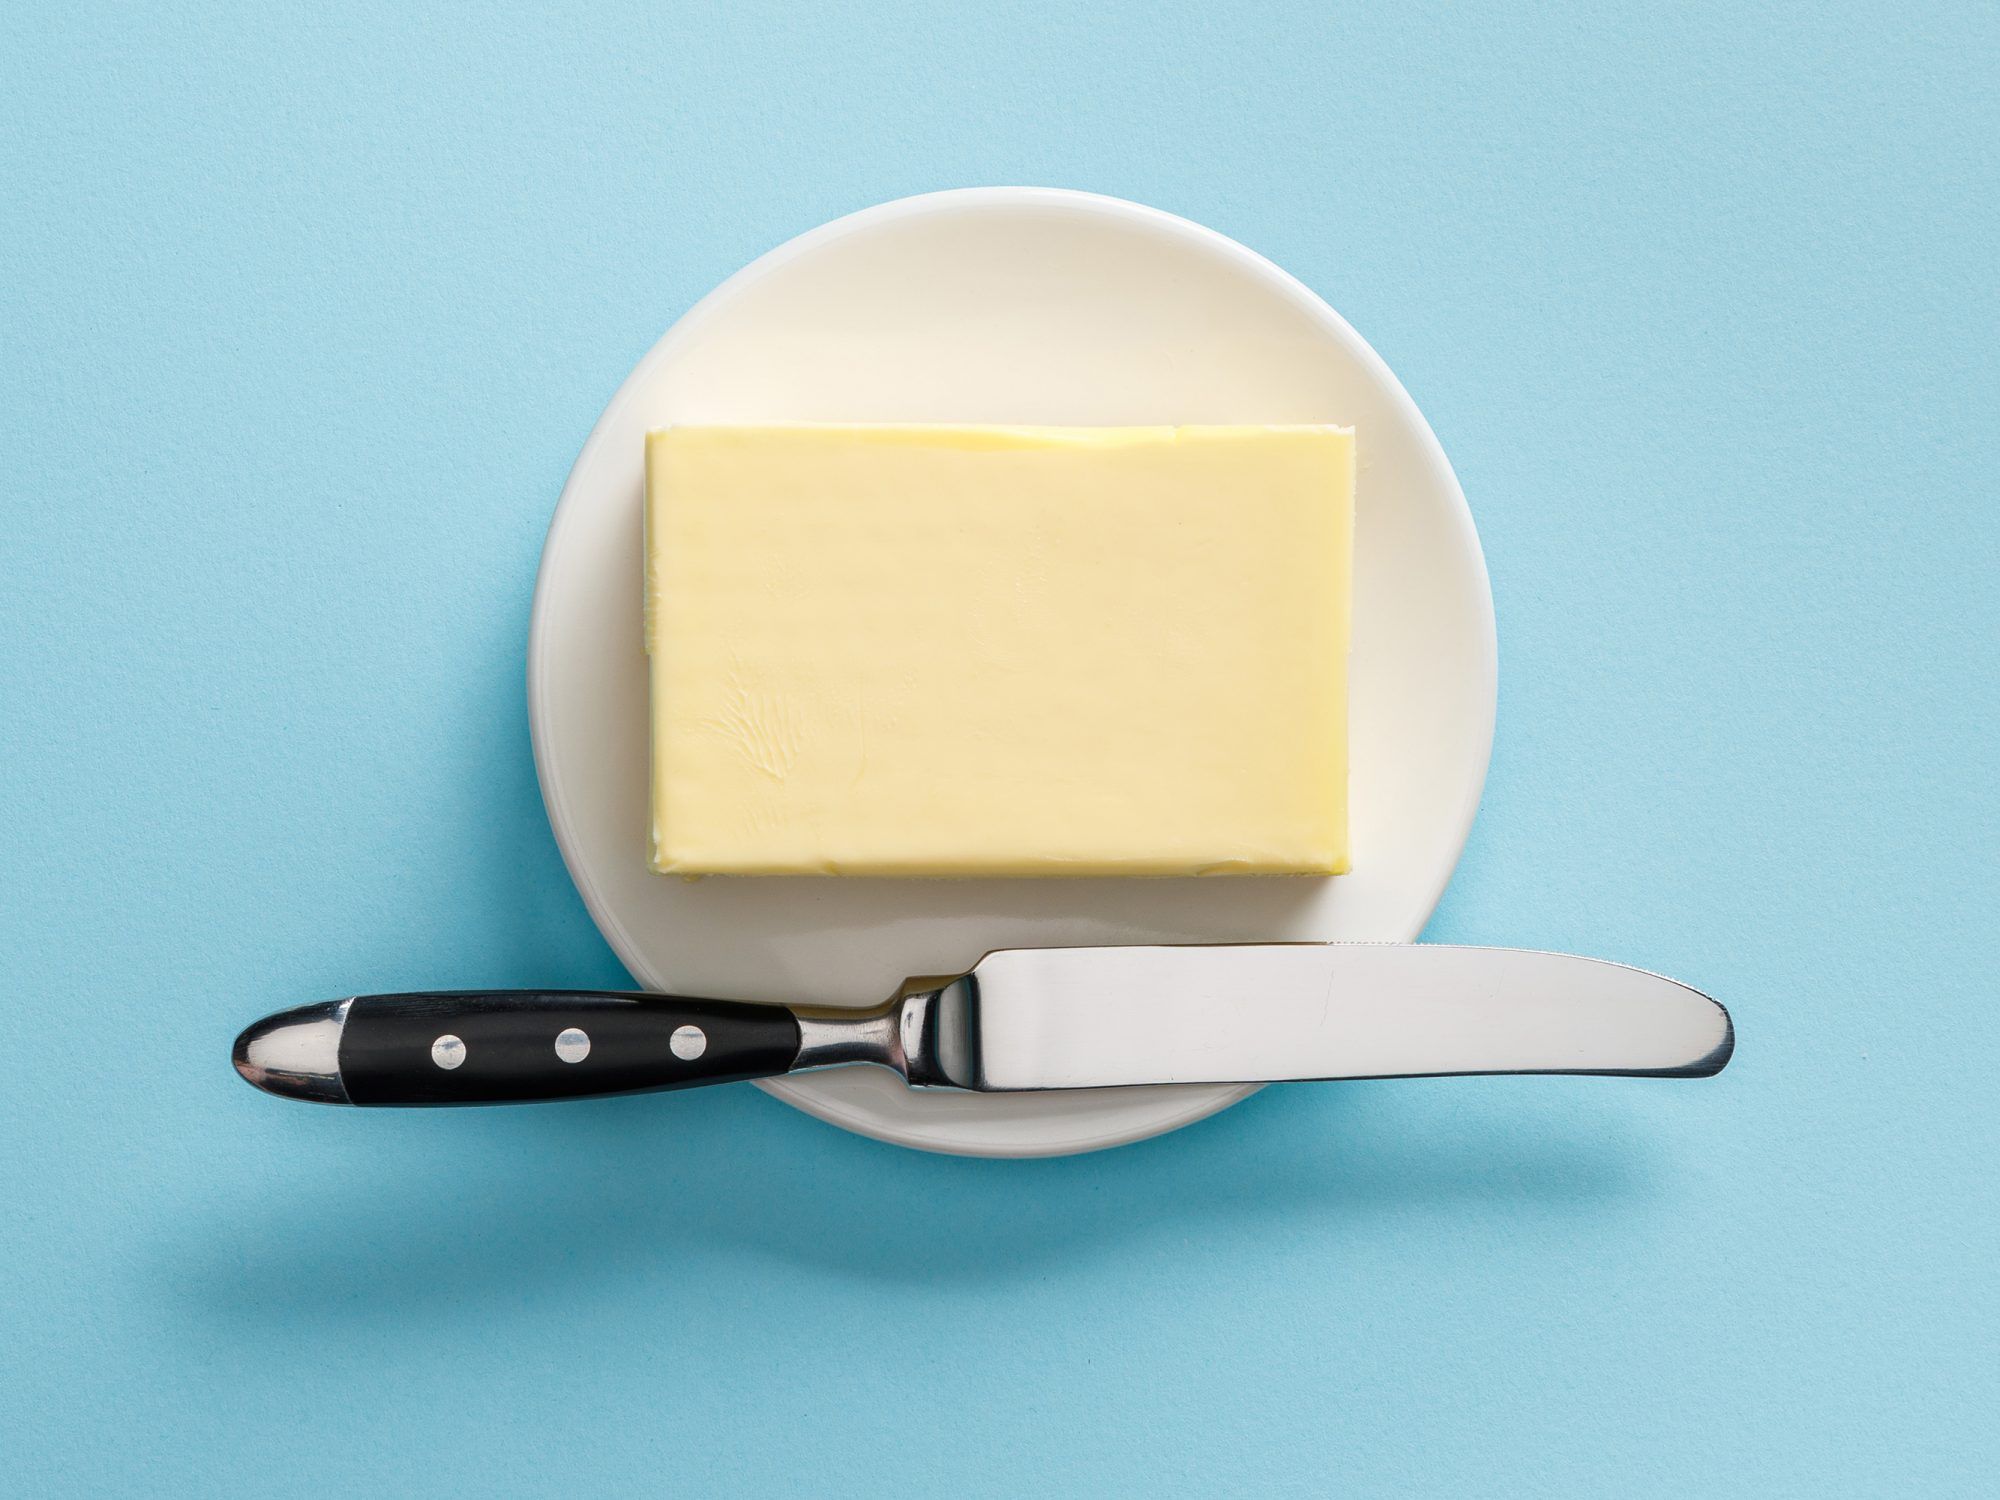 Maslac nije superhrana, ali ima li nutritivnu vrijednost? Pitali smo RD-ove